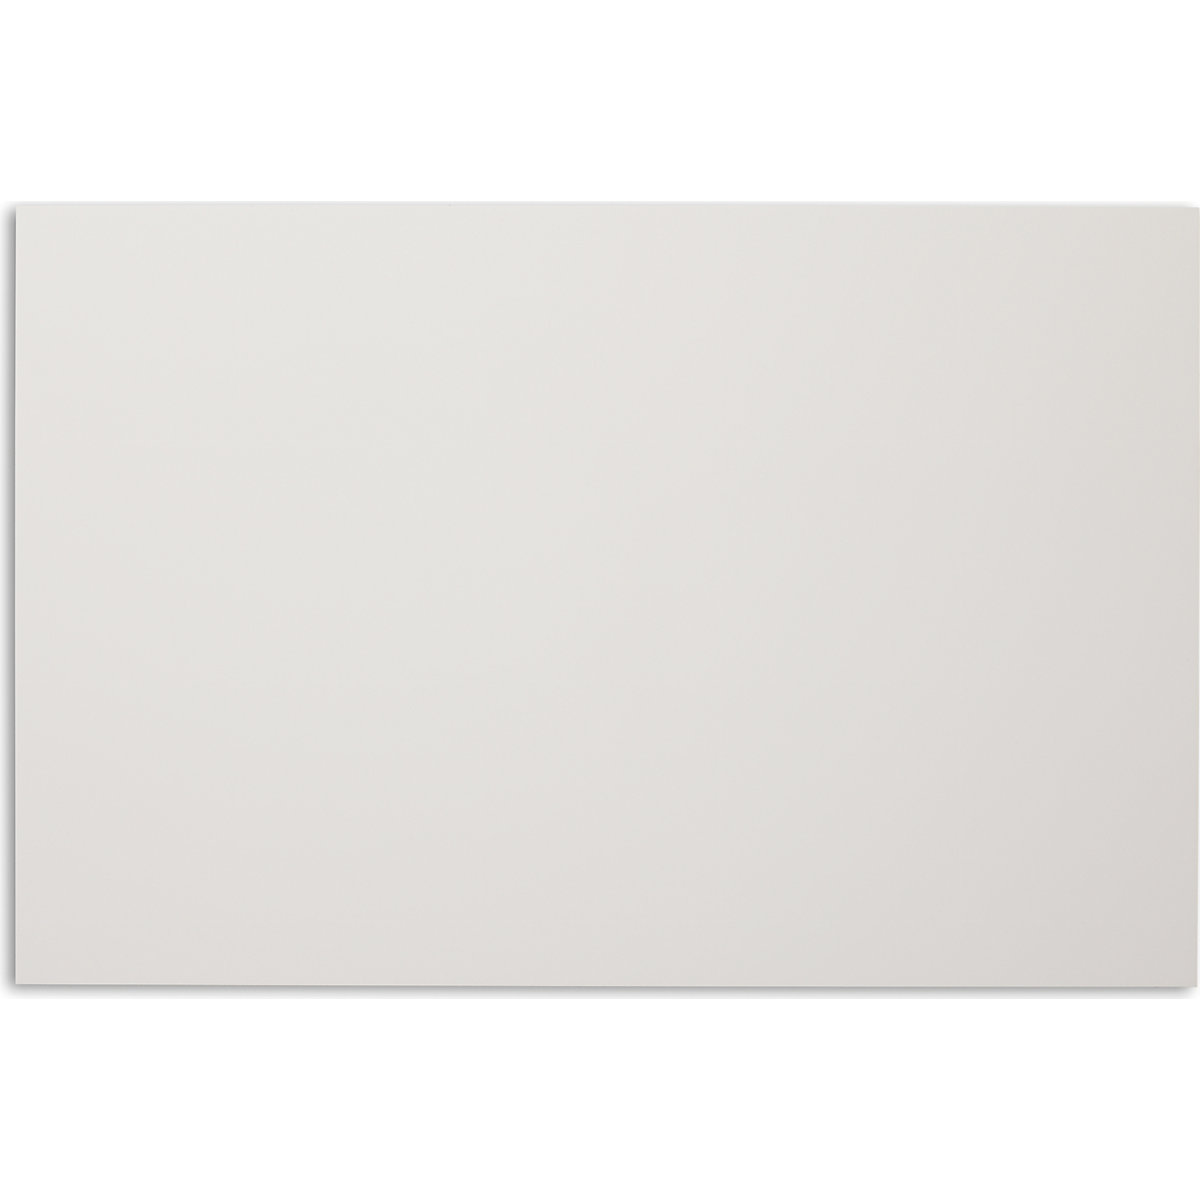 Chameleon – Quadro branco SHARP, sem caixilho, com cantos retos, LxA 880 x 580 mm